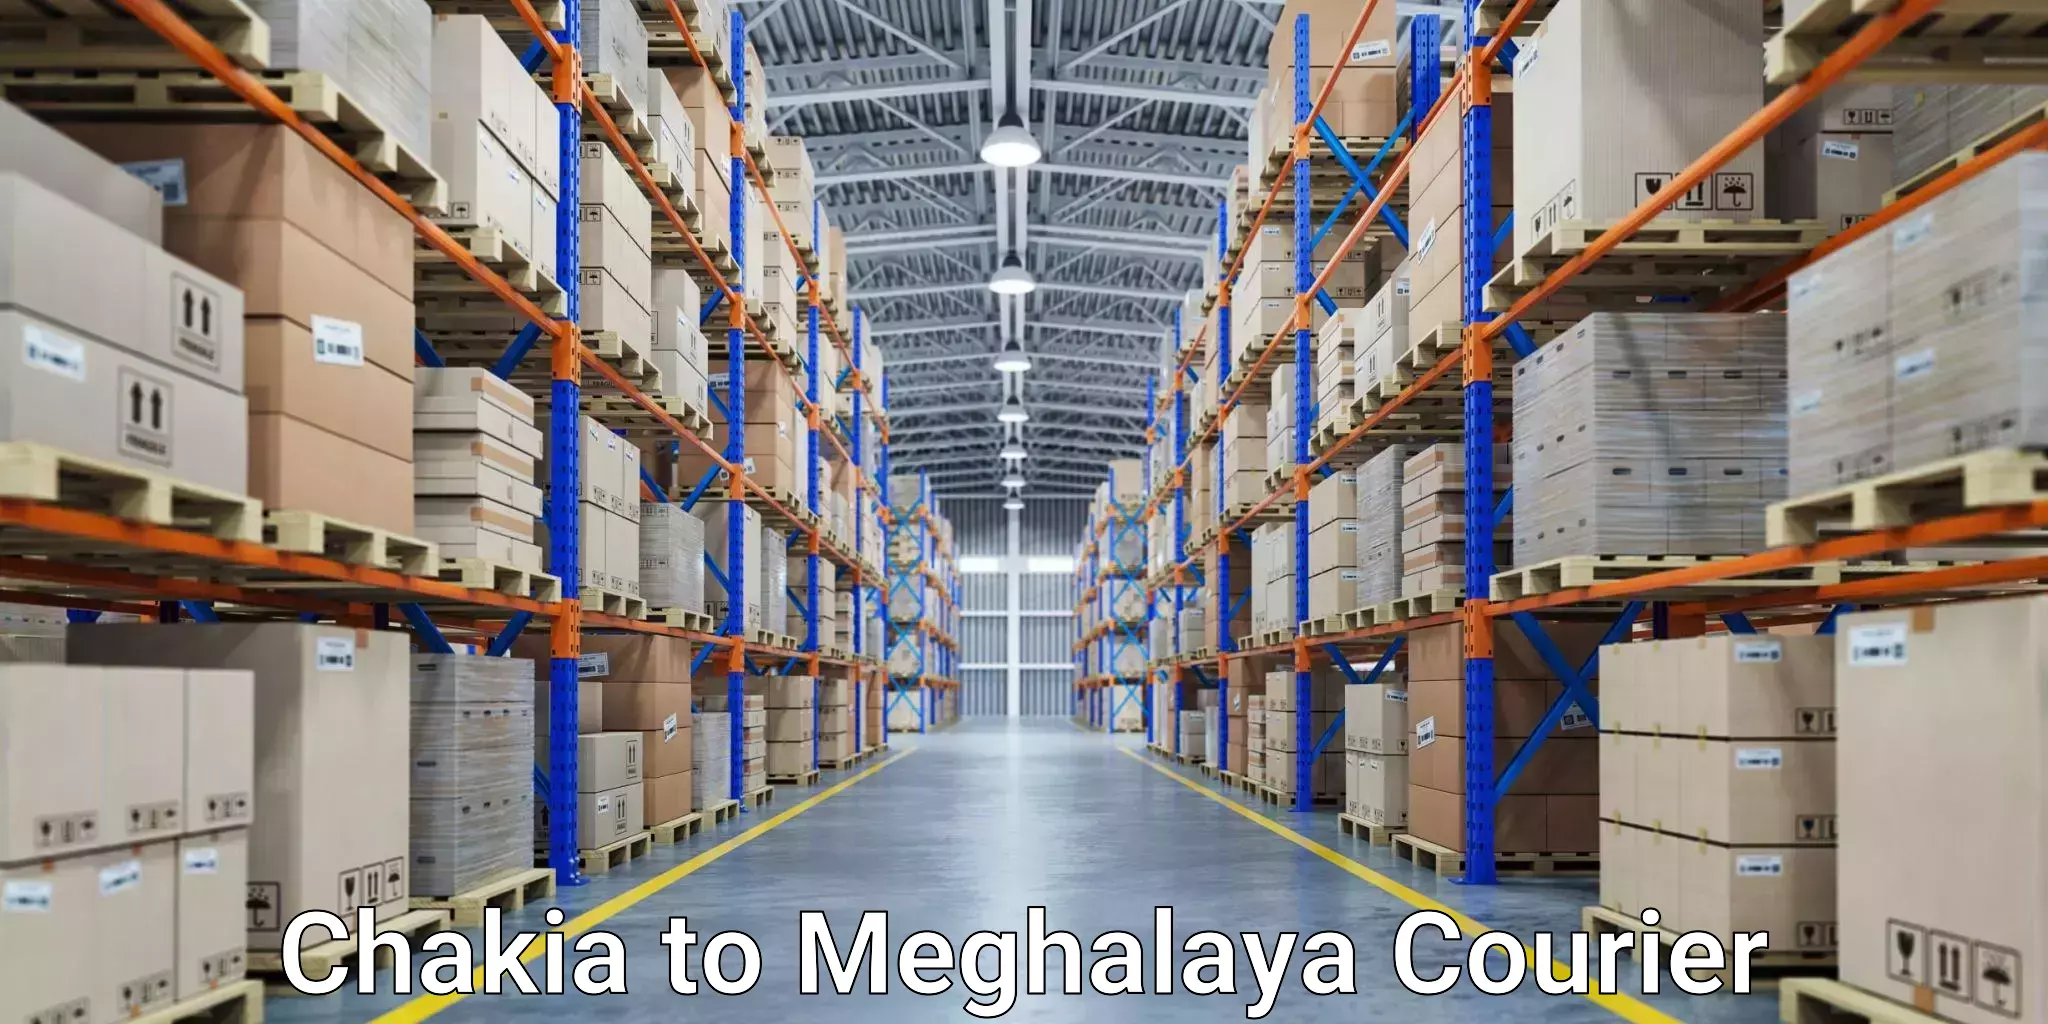 Specialized shipment handling Chakia to Meghalaya